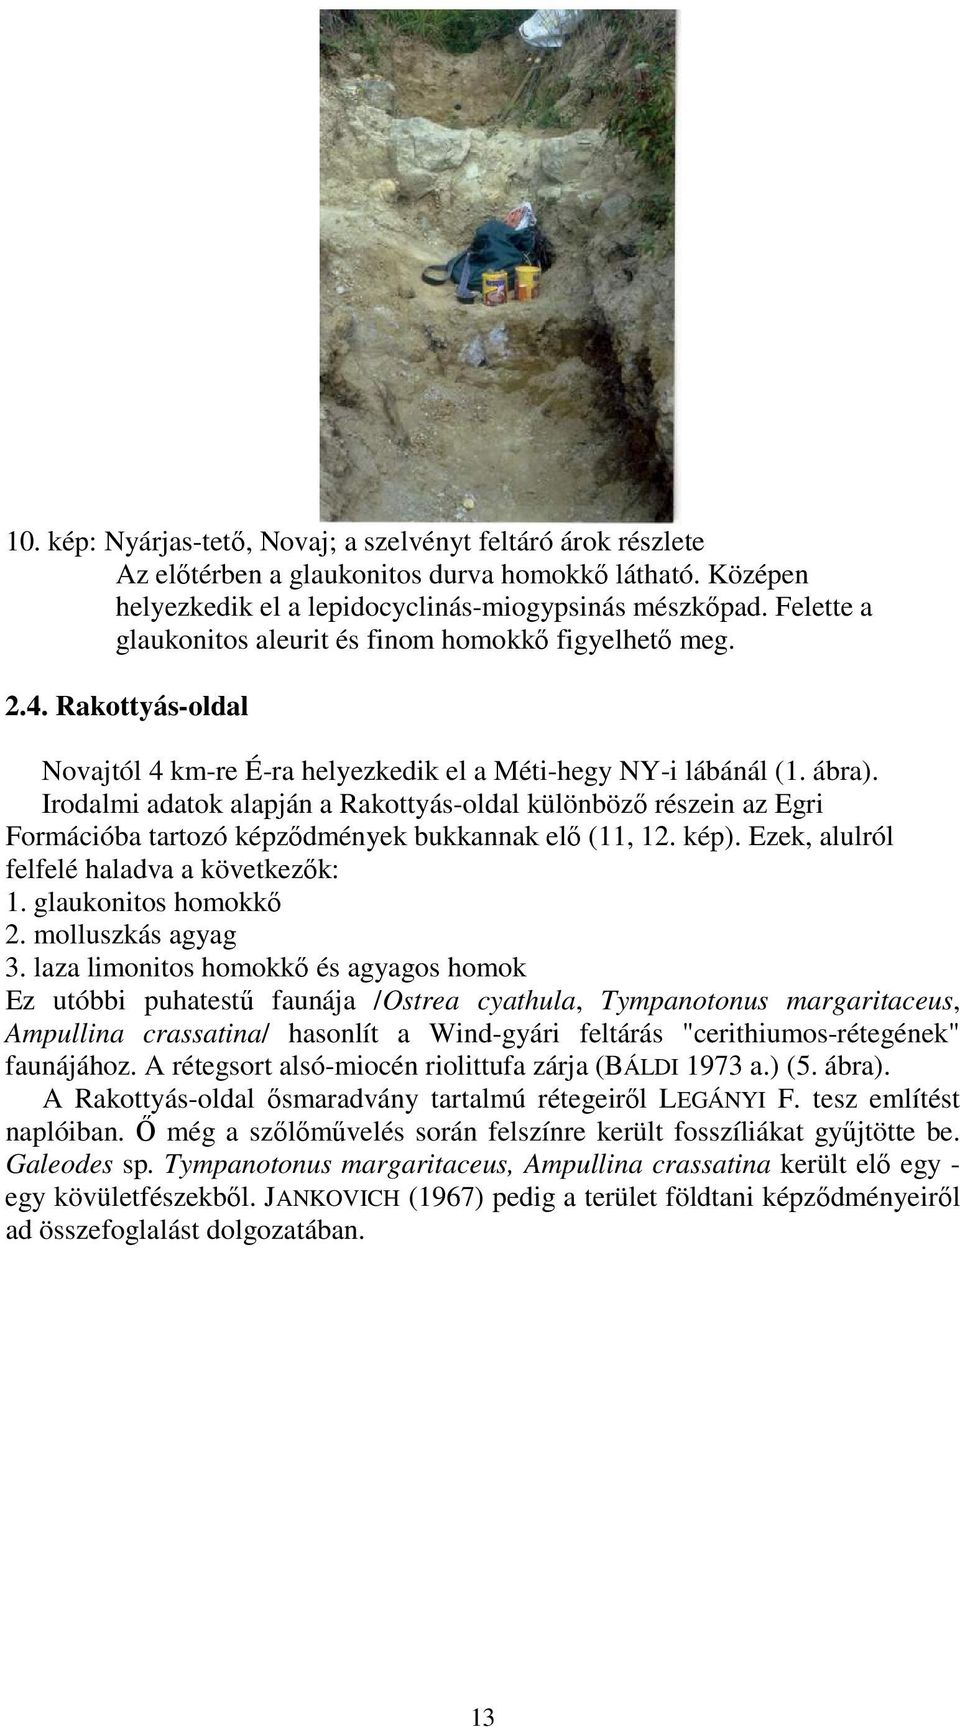 Irodalmi adatok alapján a Rakottyás-oldal különbözı részein az Egri Formációba tartozó képzıdmények bukkannak elı (11, 12. kép). Ezek, alulról felfelé haladva a következık: 1. glaukonitos homokkı 2.